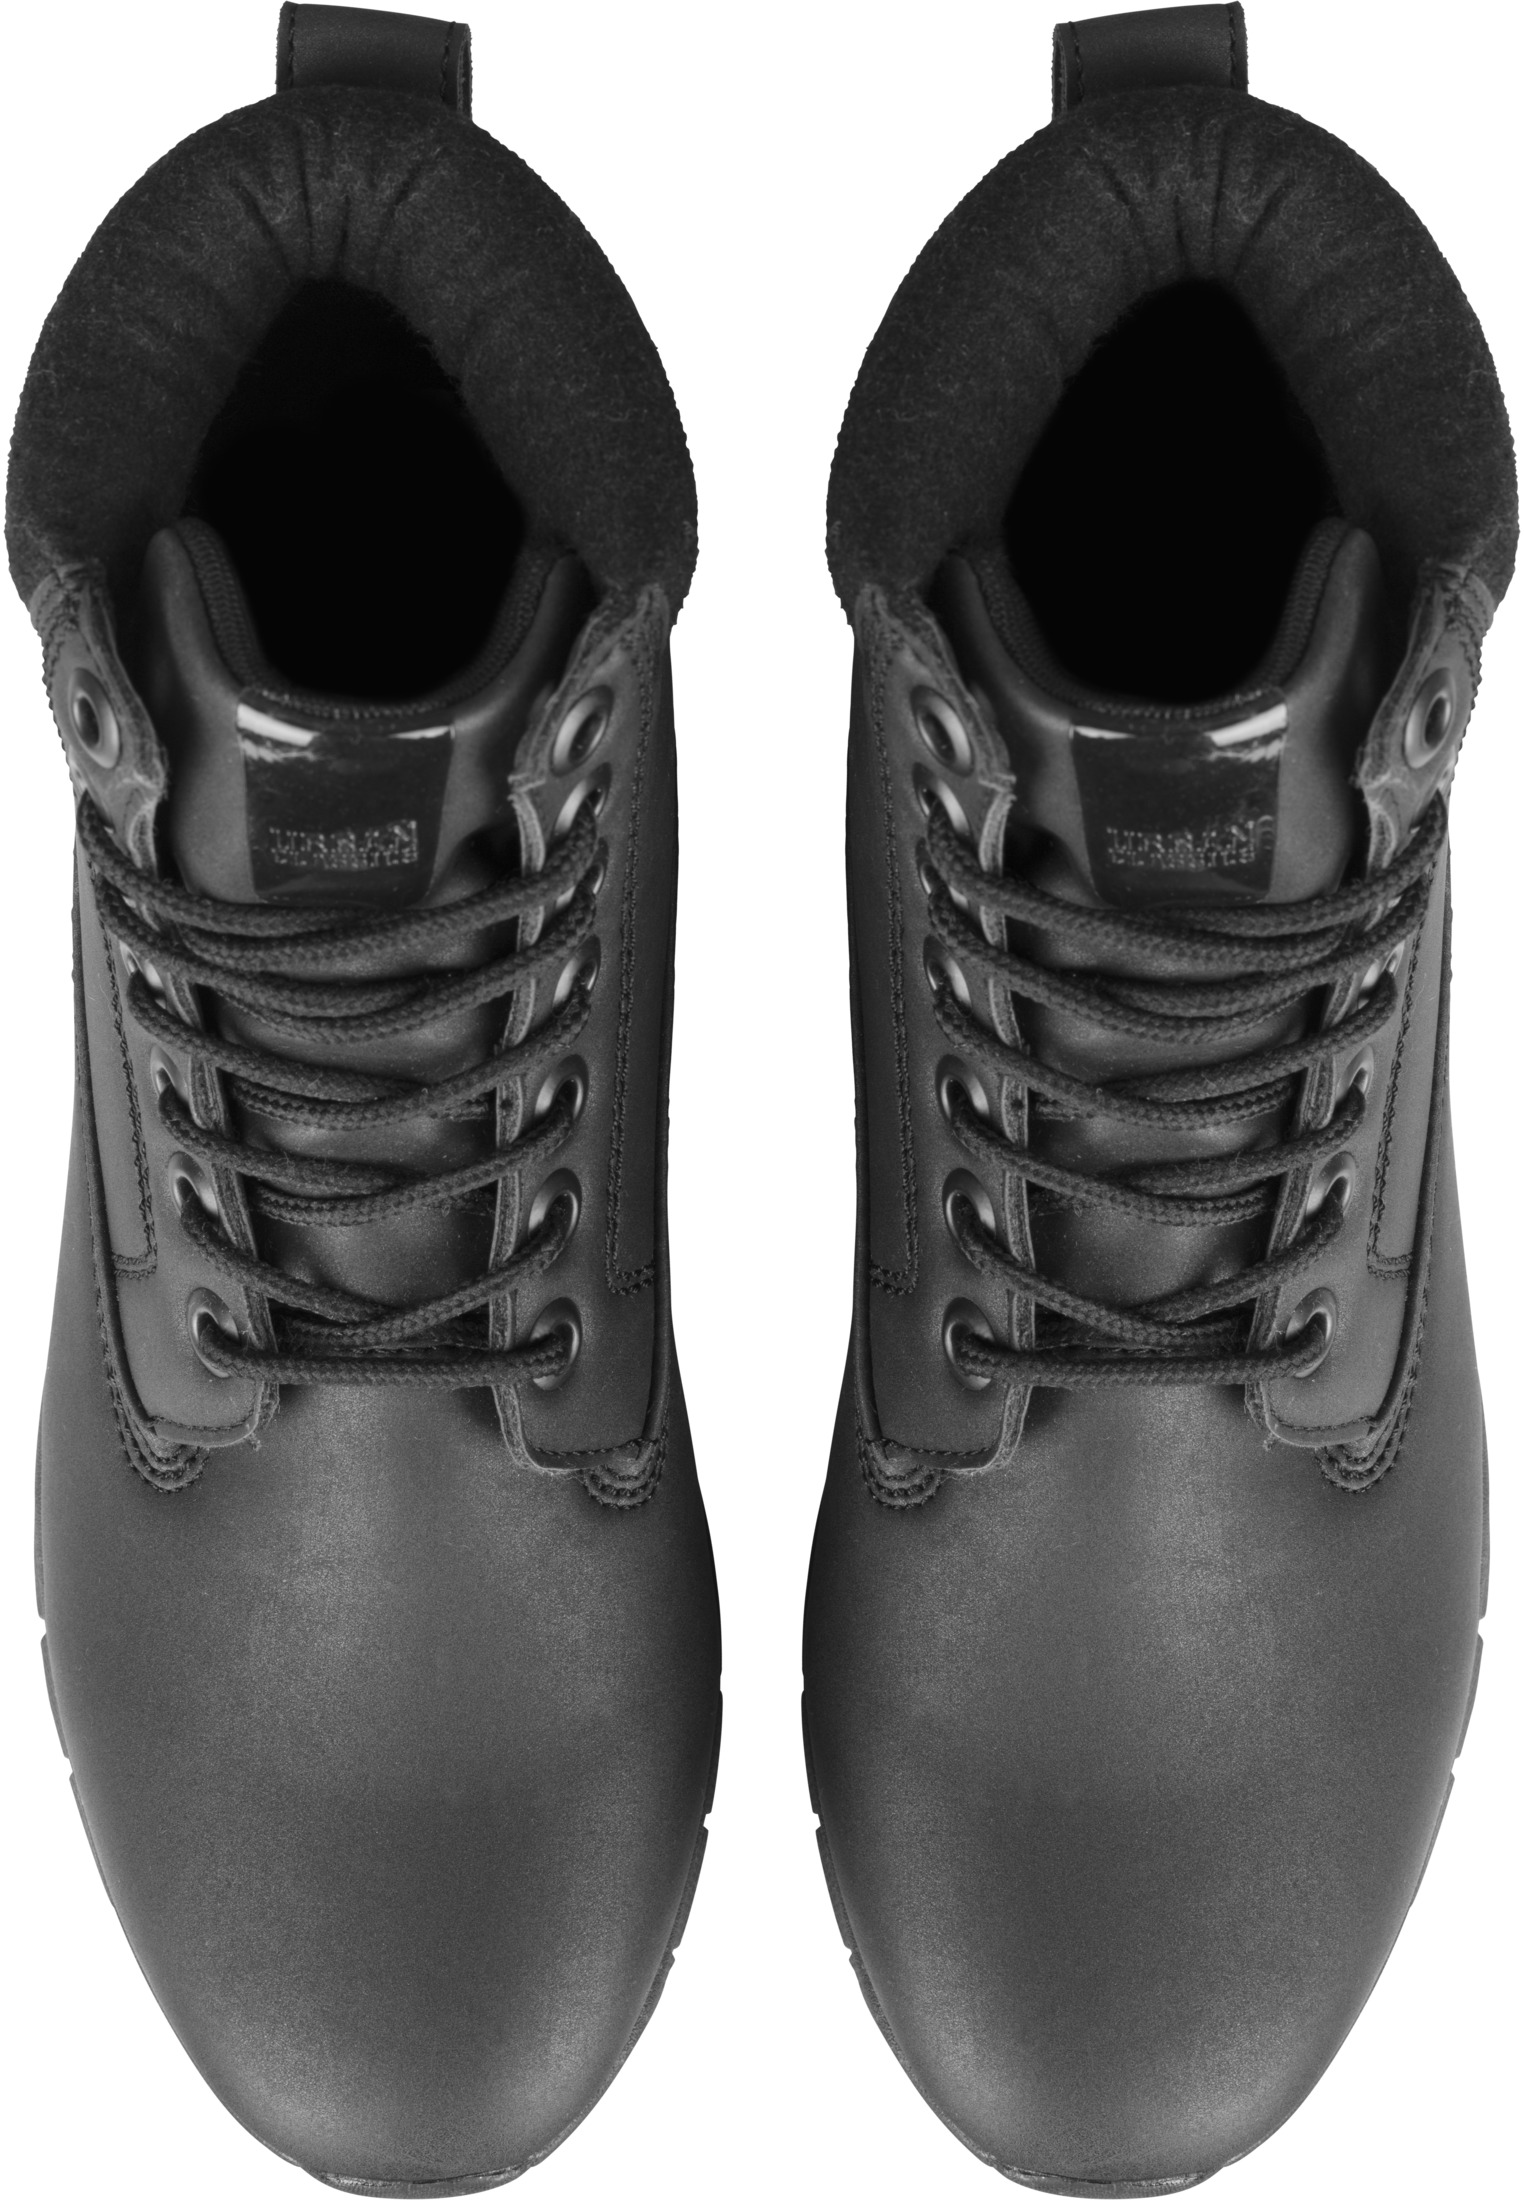 Schuhe Runner Boots in Farbe black/black/black